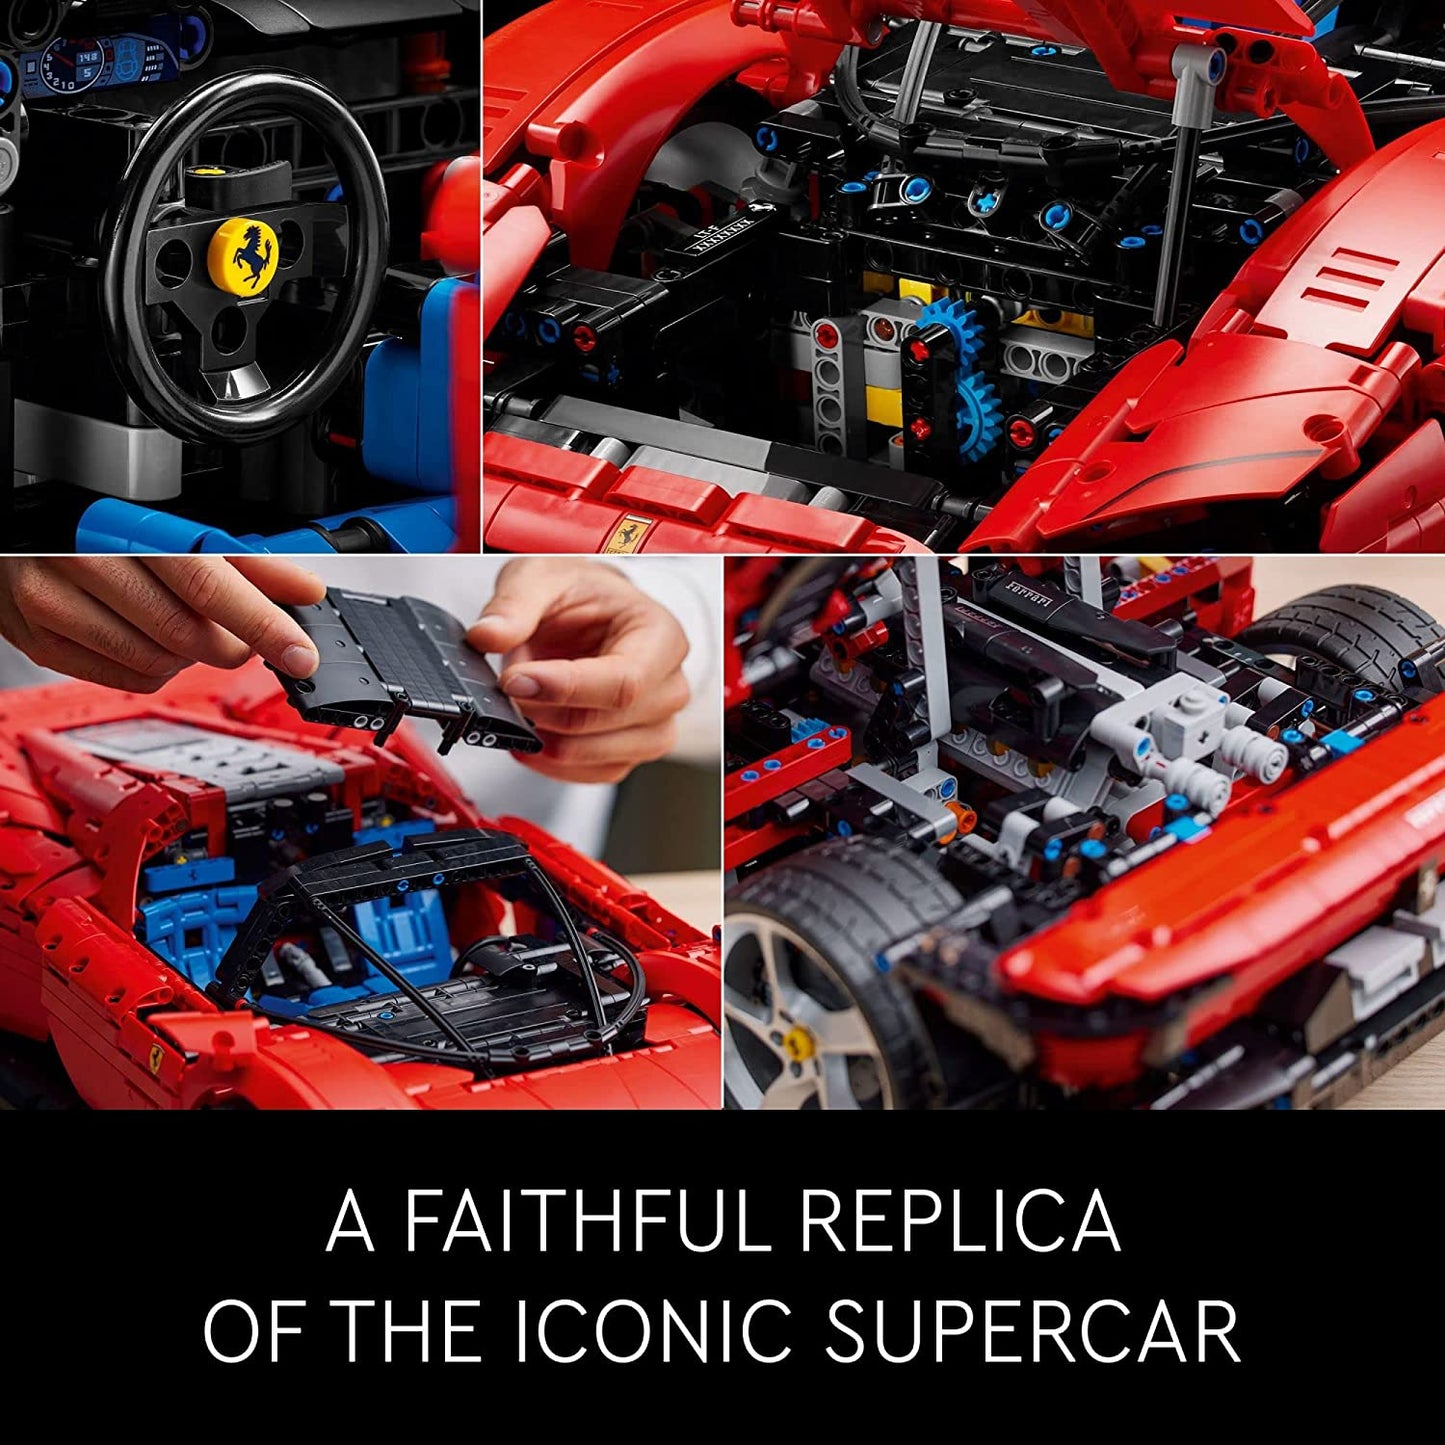 LEGO Technic - Ferrari Daytona SP3 Race Car 42143